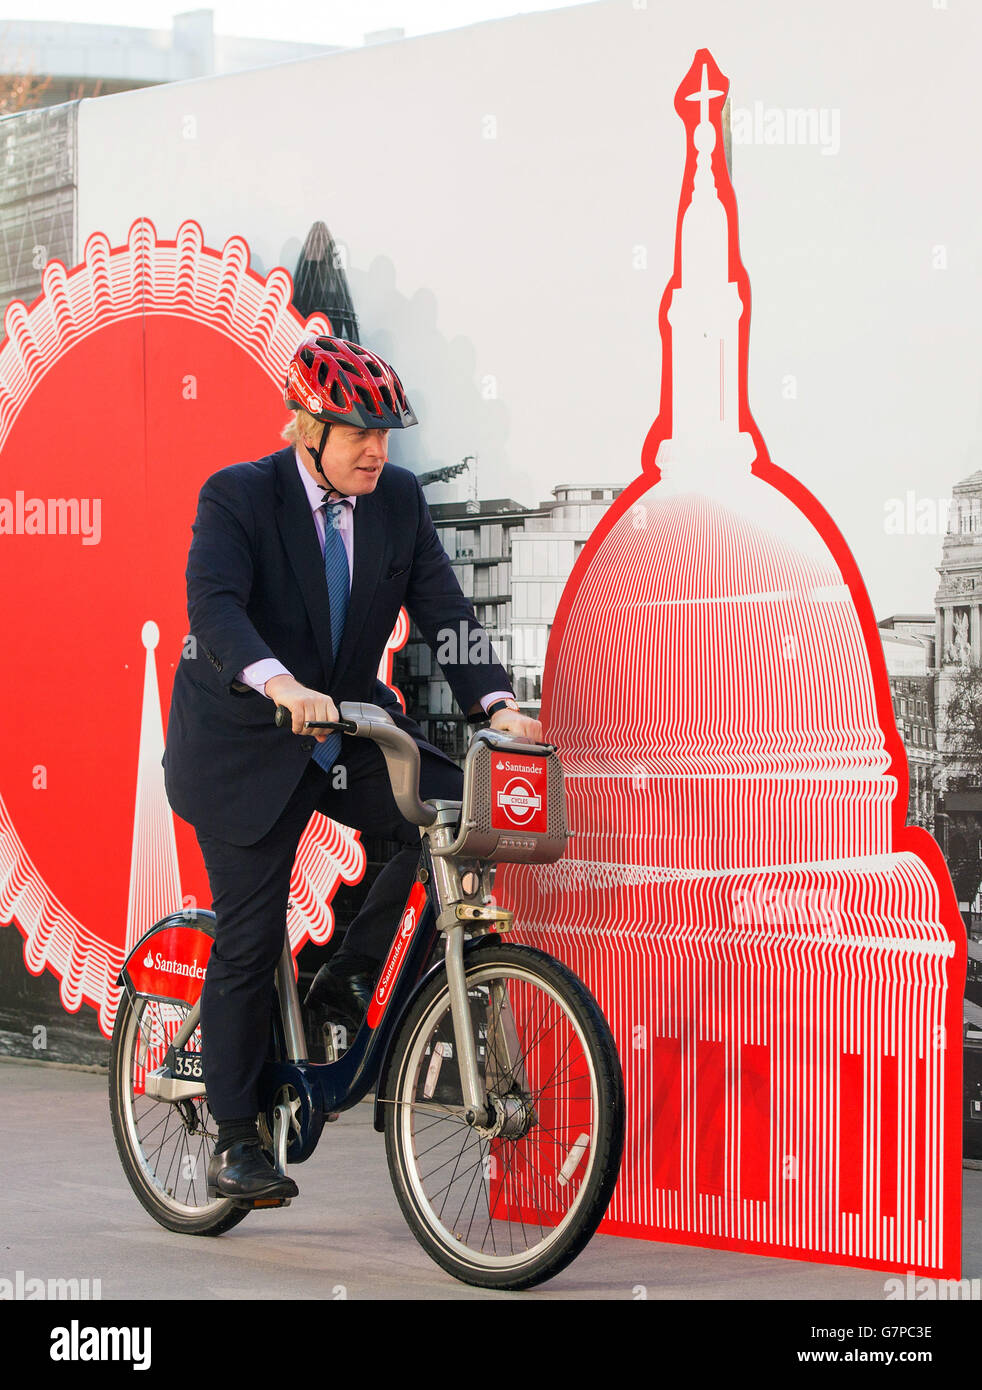 El alcalde de Londres Boris Johnson monta una bicicleta de alquiler en un  evento de lanzamiento en el centro de Londres anunciando a Santander como  el nuevo patrocinador del plan de alquiler